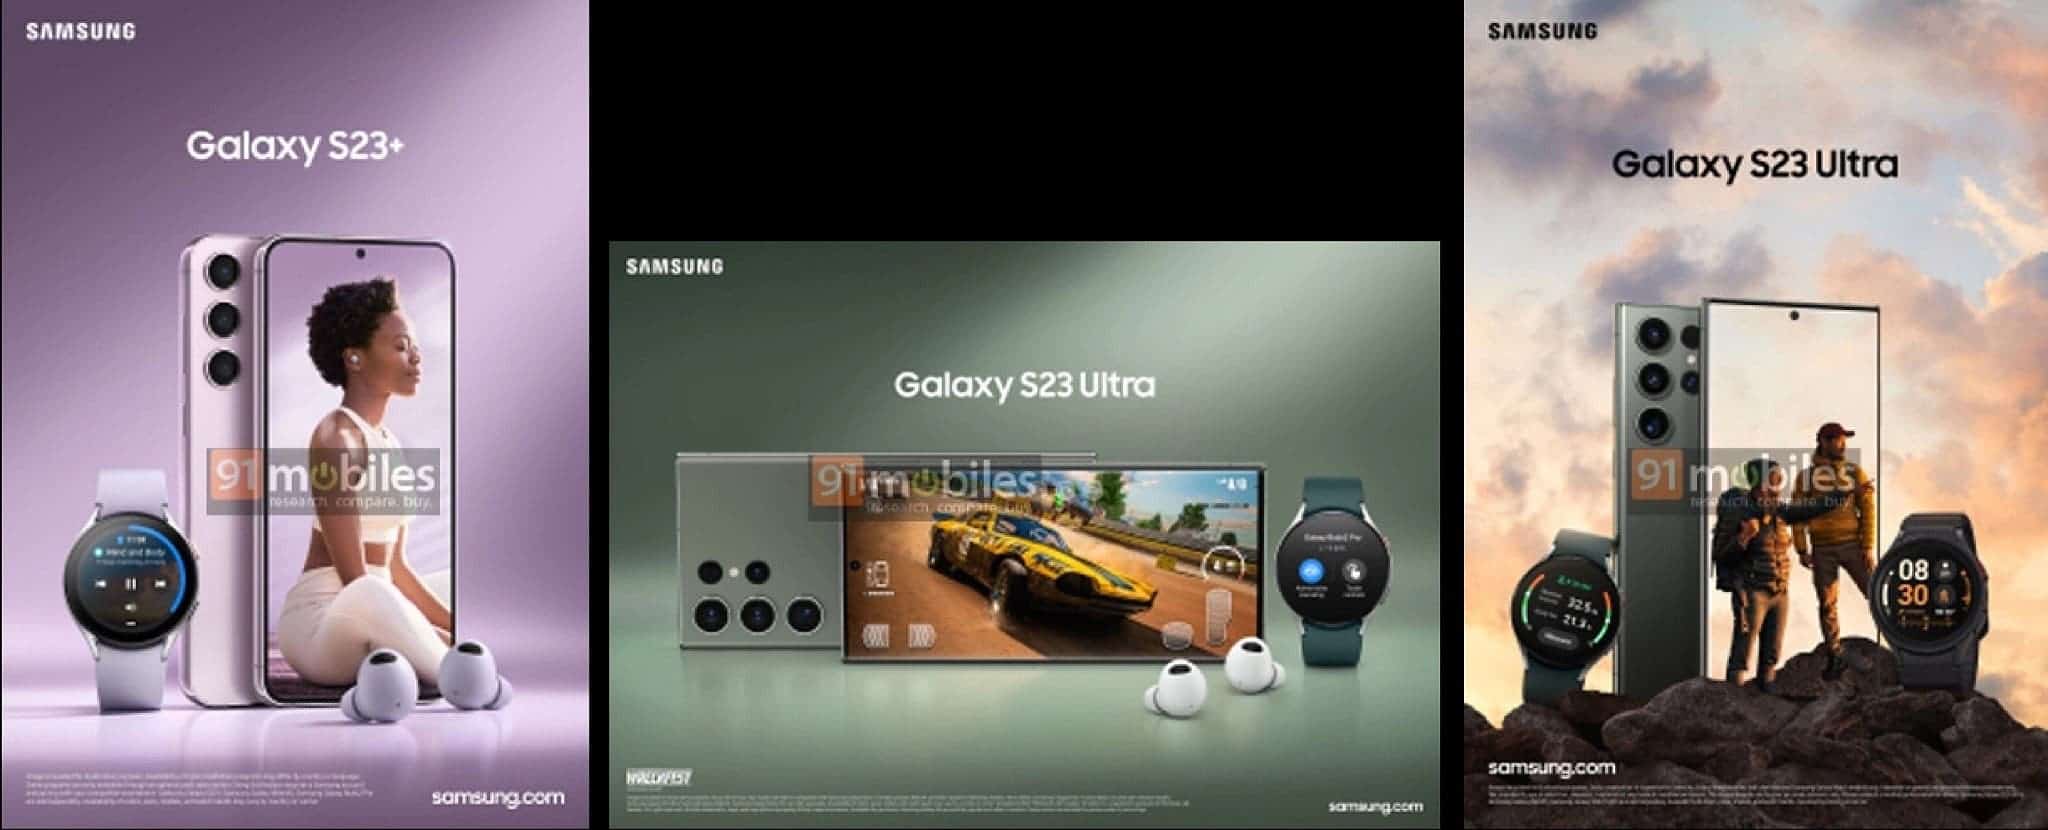 Galaxy S23 سرب صورًا ترويجية